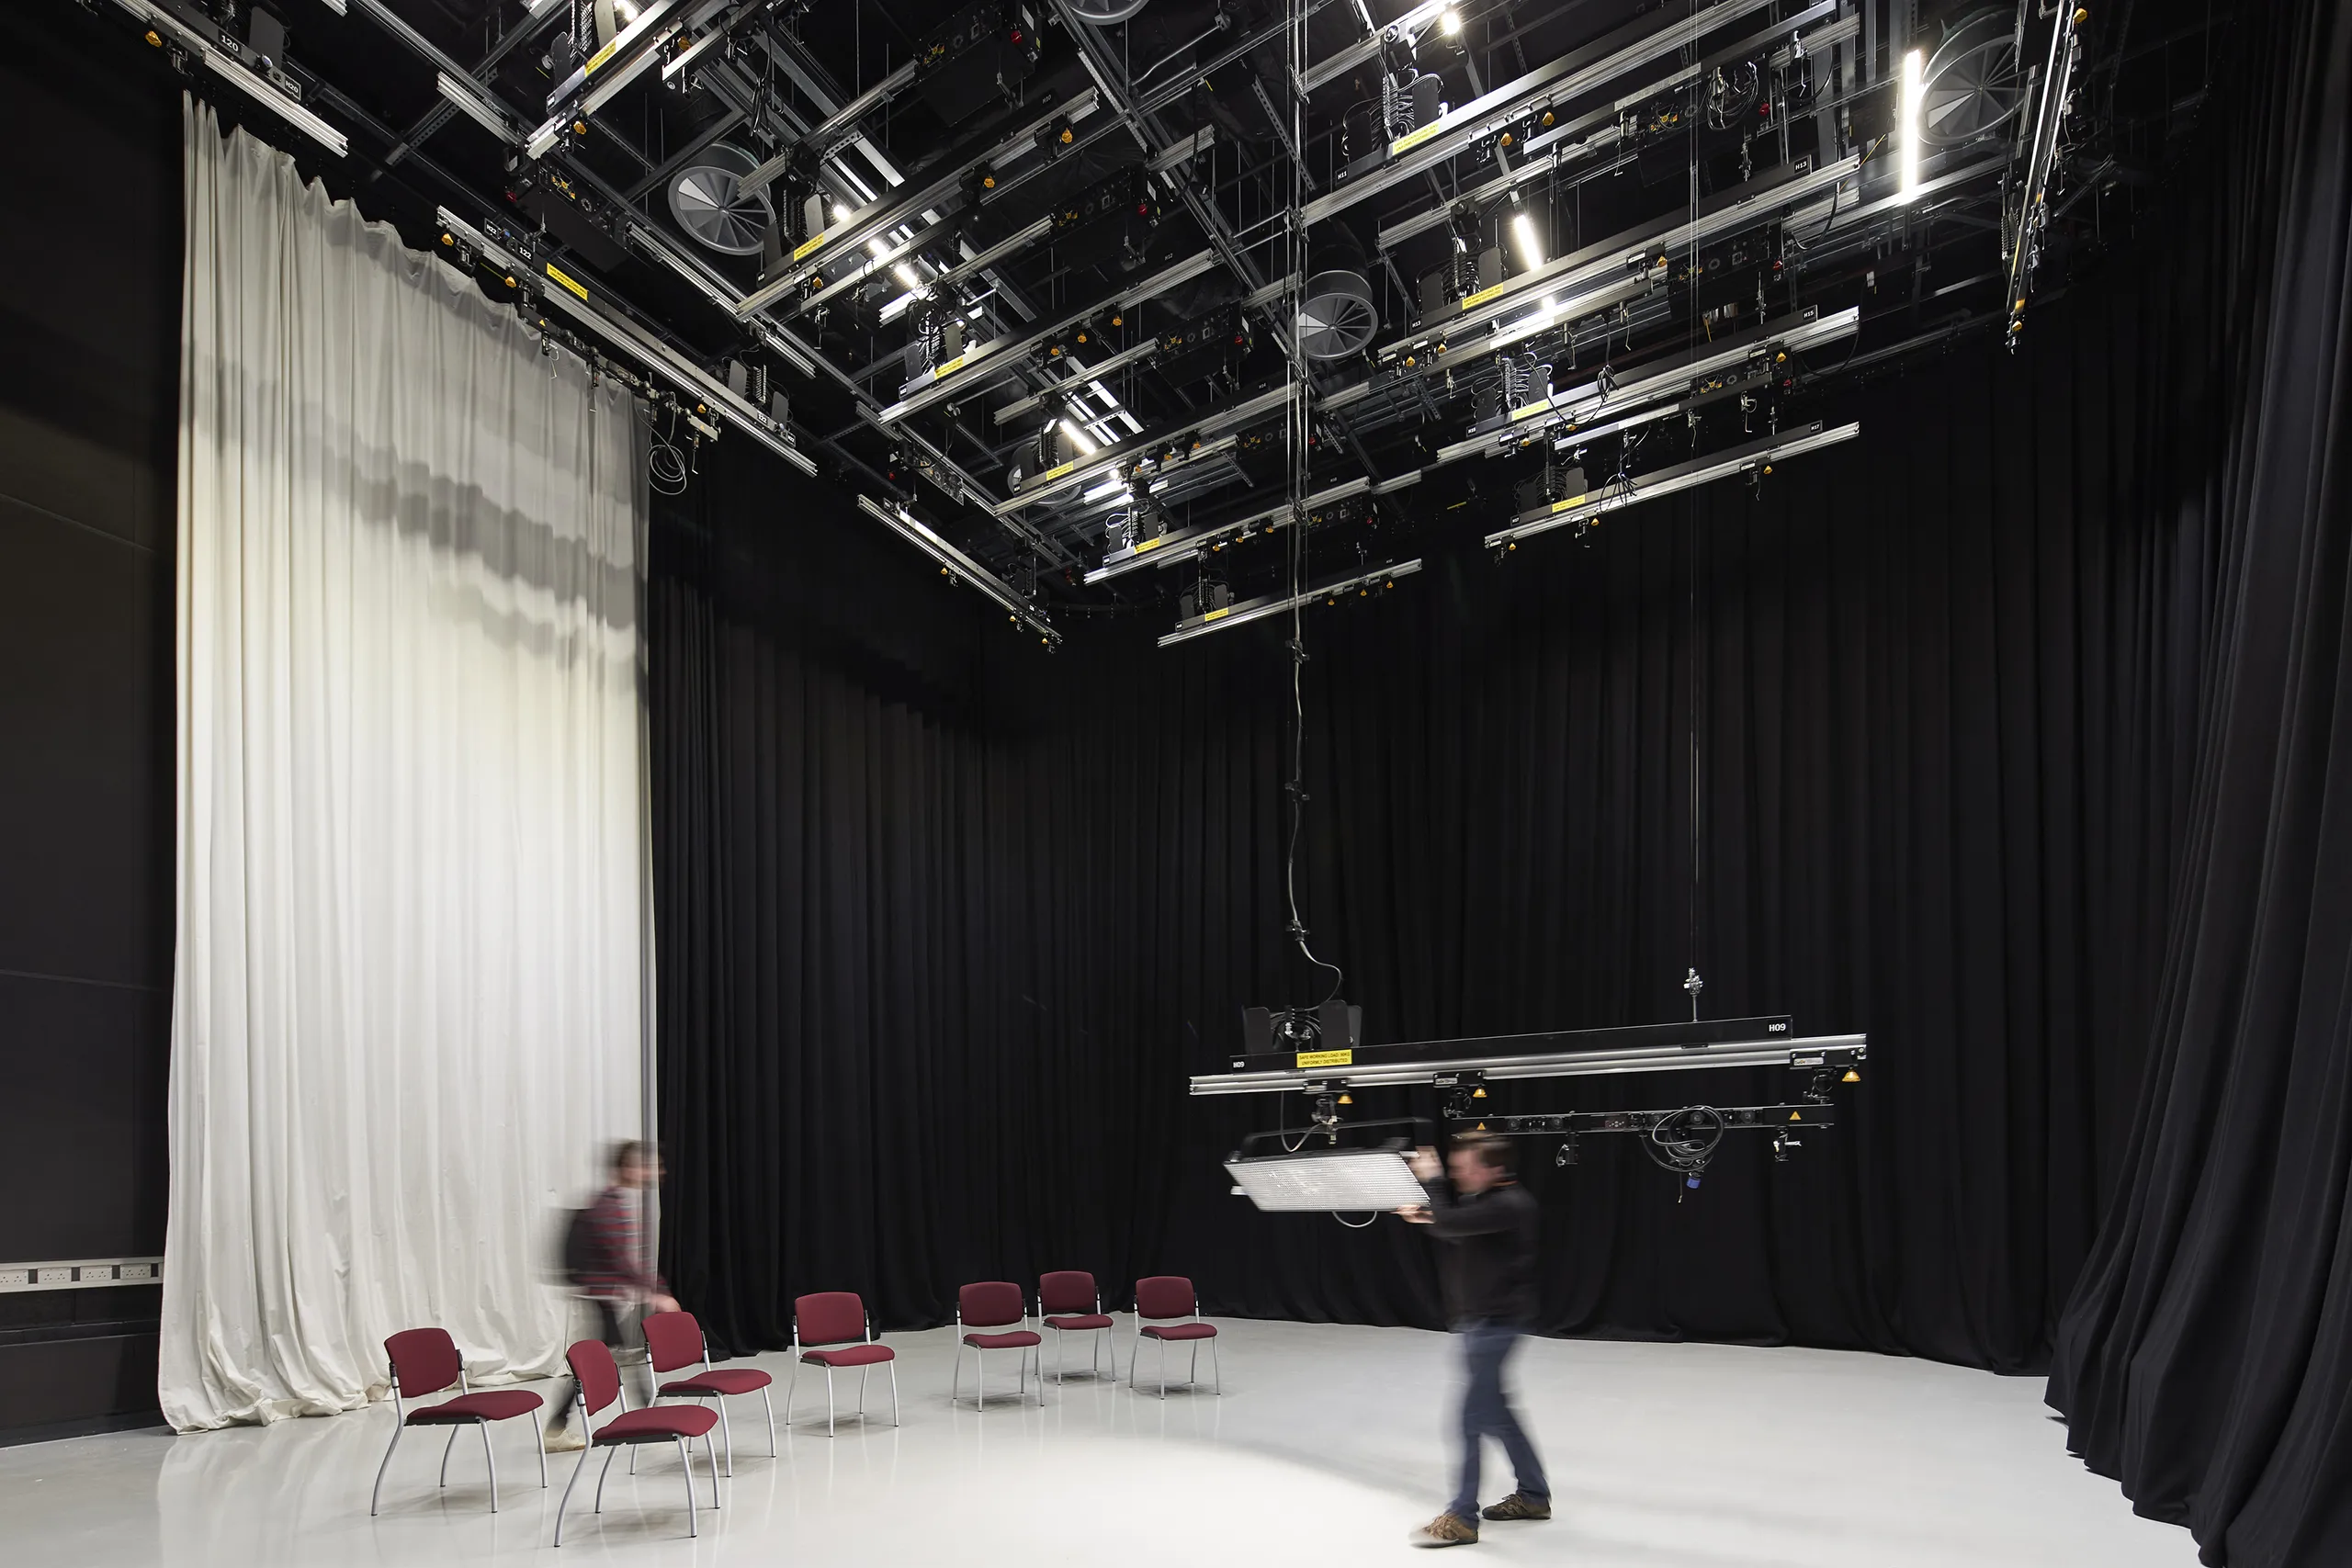 Leeds Beckett University film studio